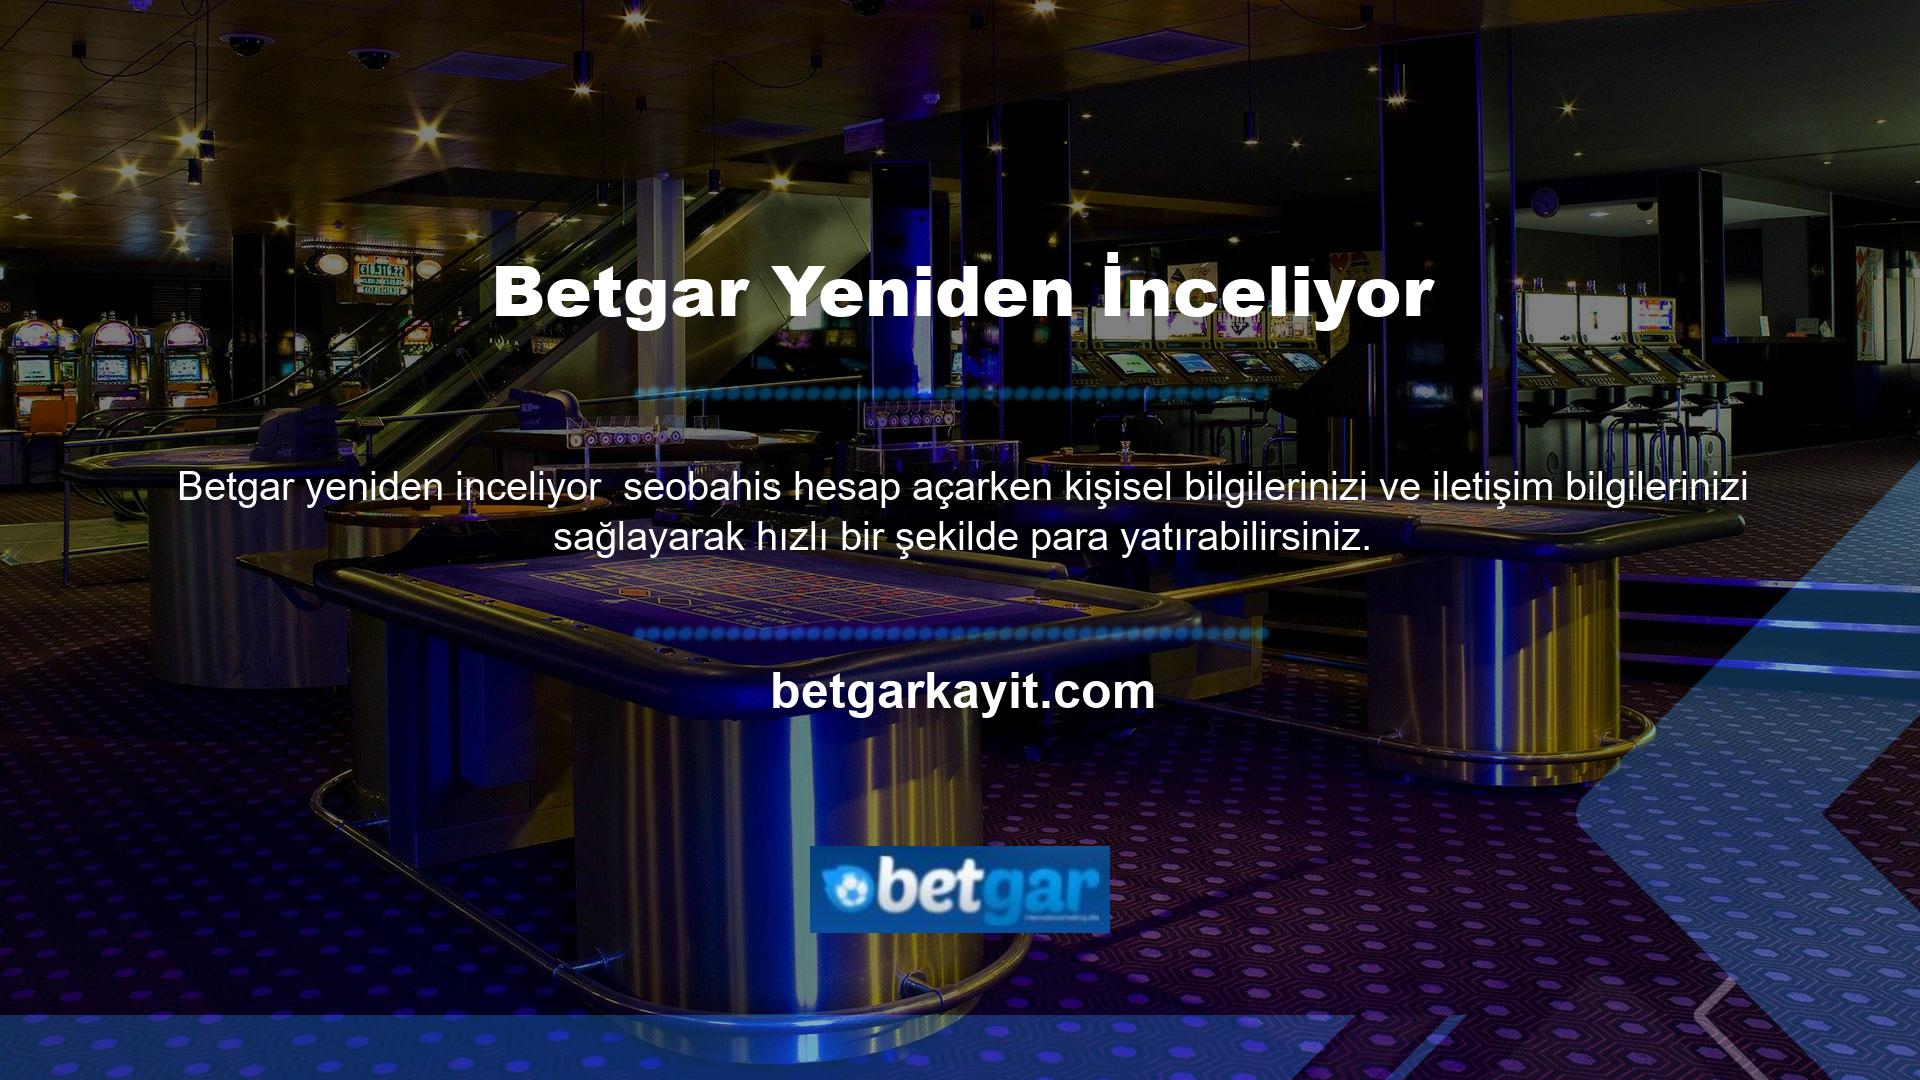 Canlı spor bahisleri ve casino oyunları sunan Betgar bahis sitesi, kendisini diğer sitelerden farklılaştırmayı başaran az sayıdaki bahis sitelerinden biridir